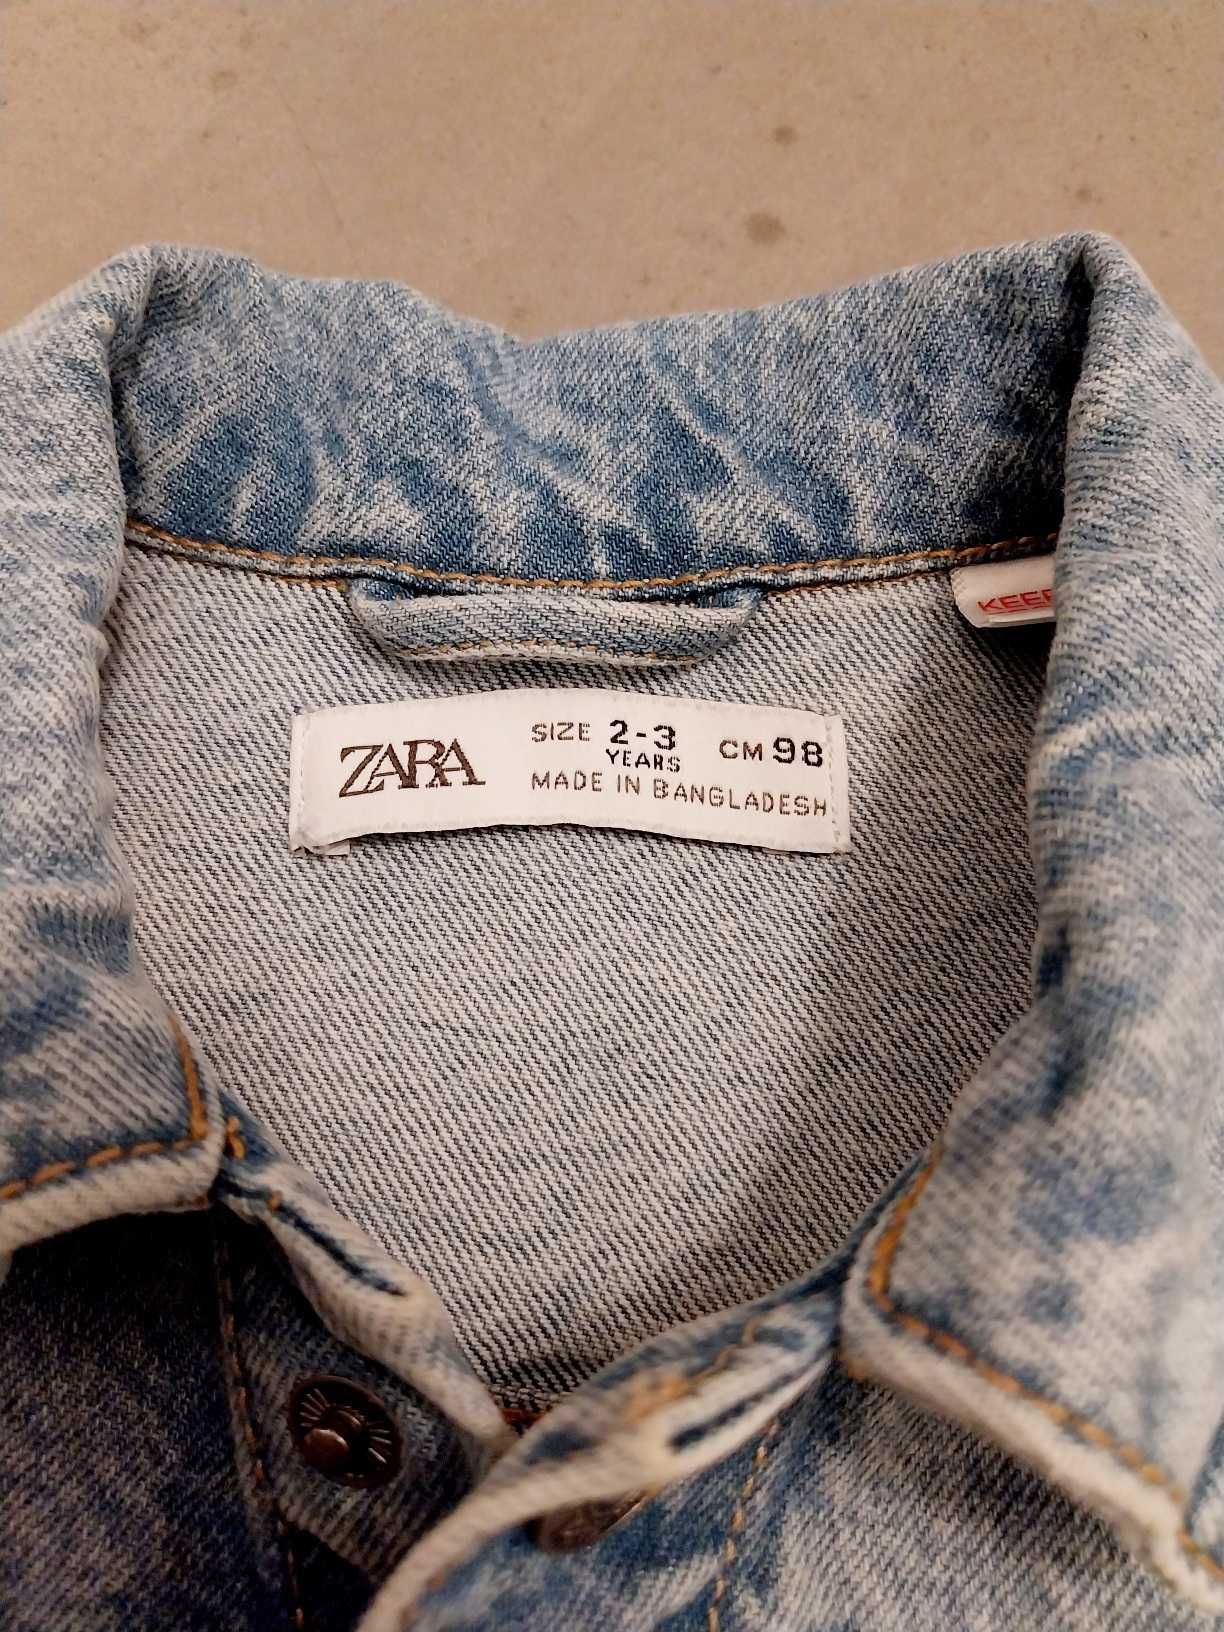 Kurtka jeansowa dla chłopca, rozmiar 98, firmy Zara